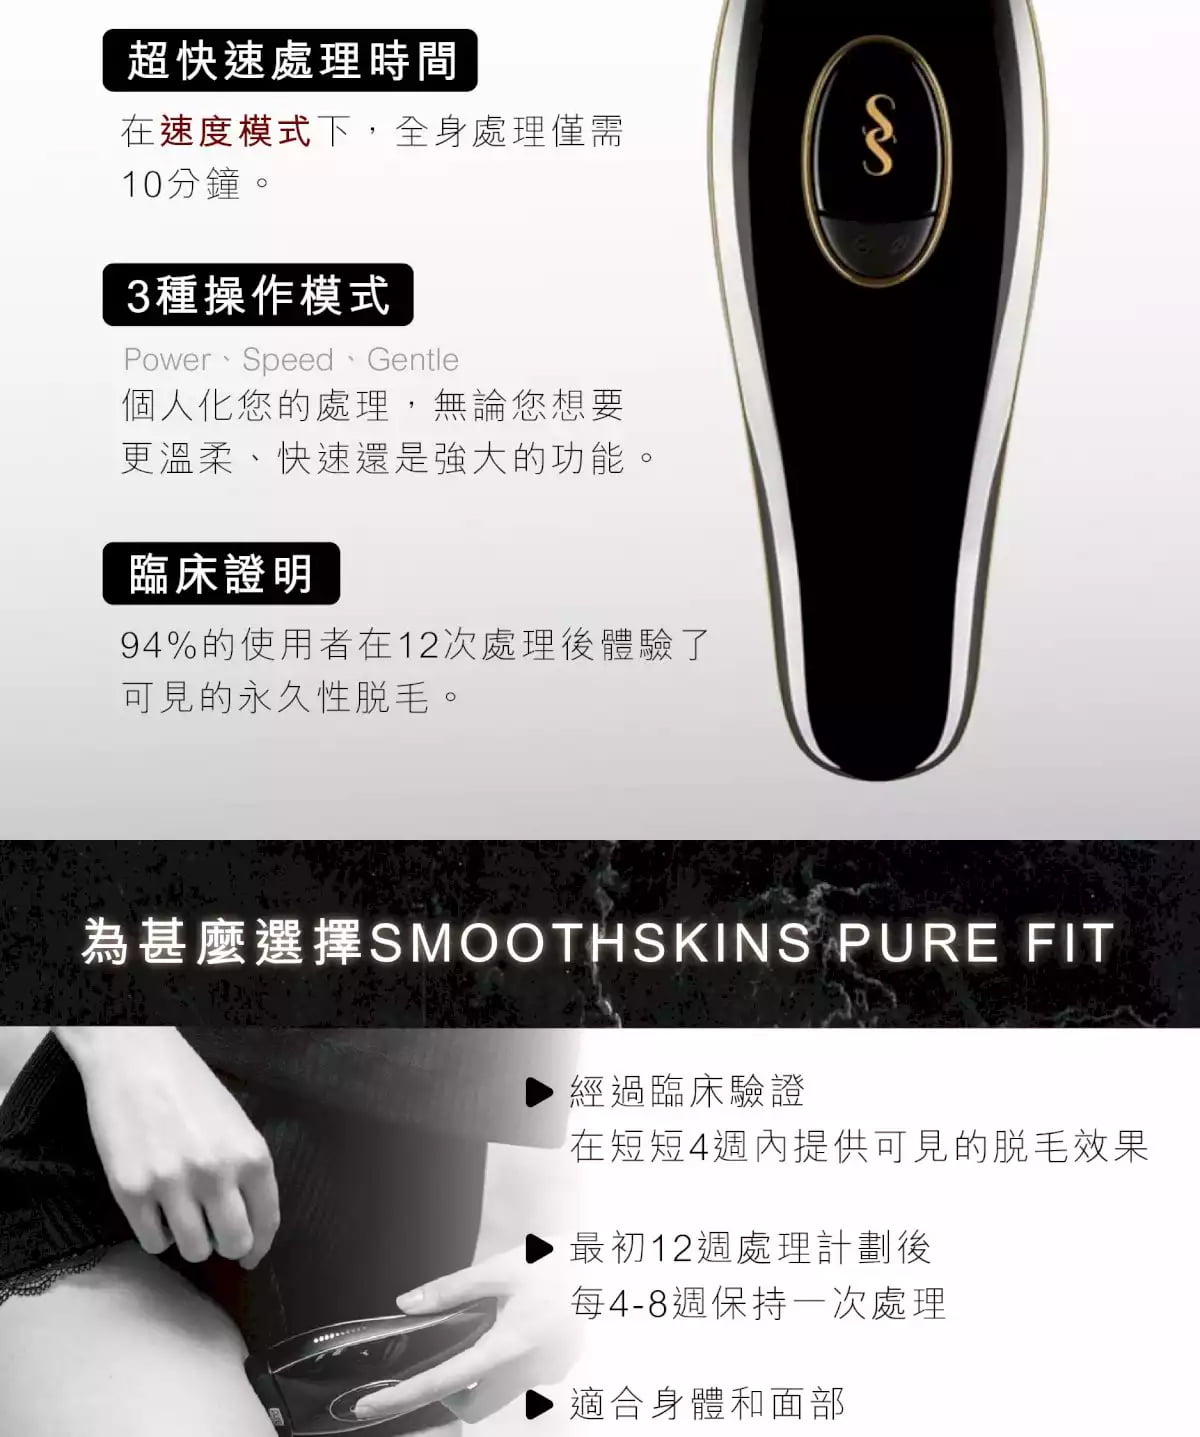 英國最新版SmoothSkin-Pure Fit 高效IPL永久脫毛機(黑色)英國製造香港